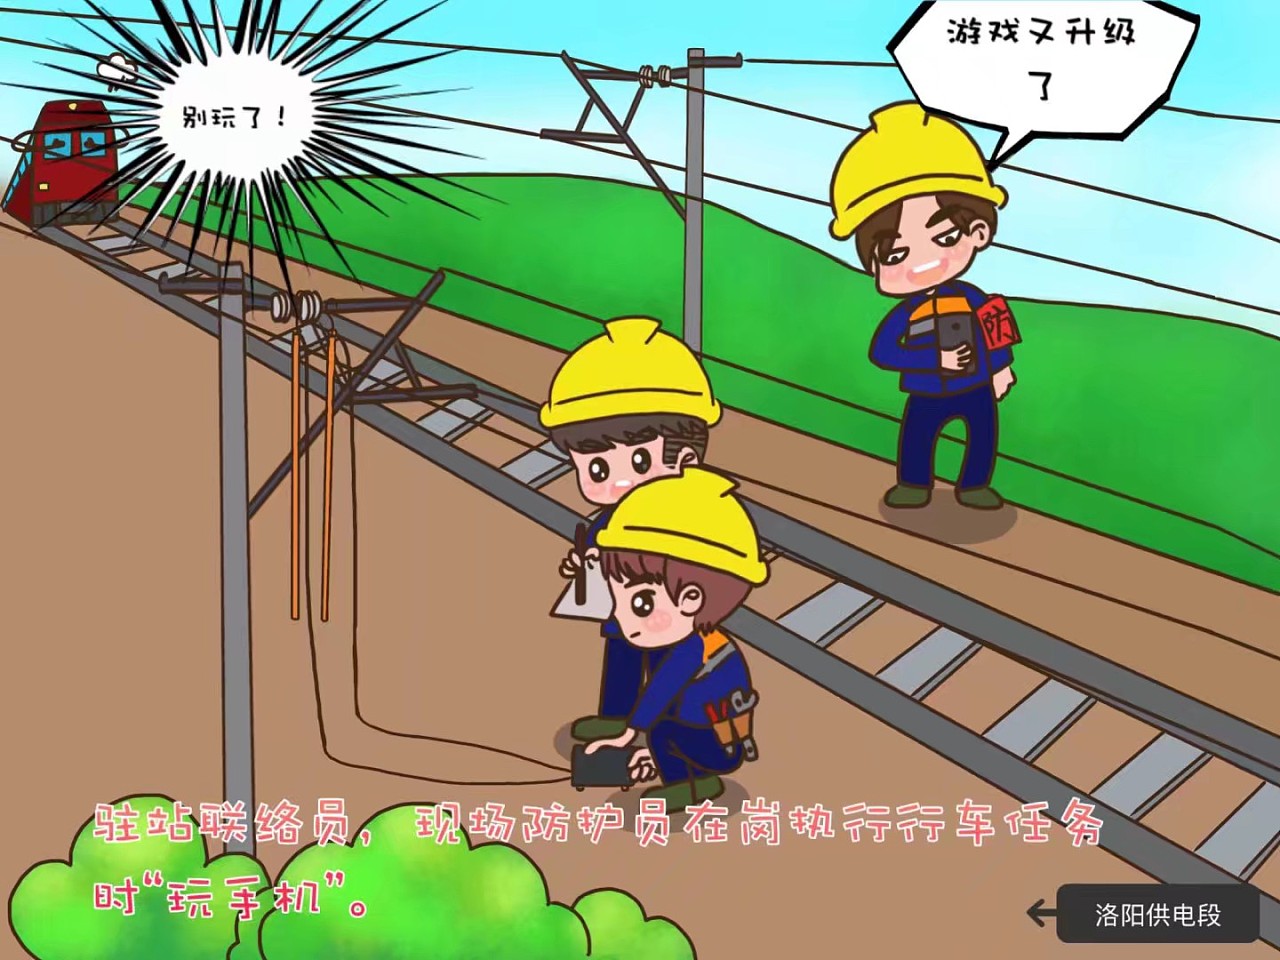 铁路供电安全小漫画